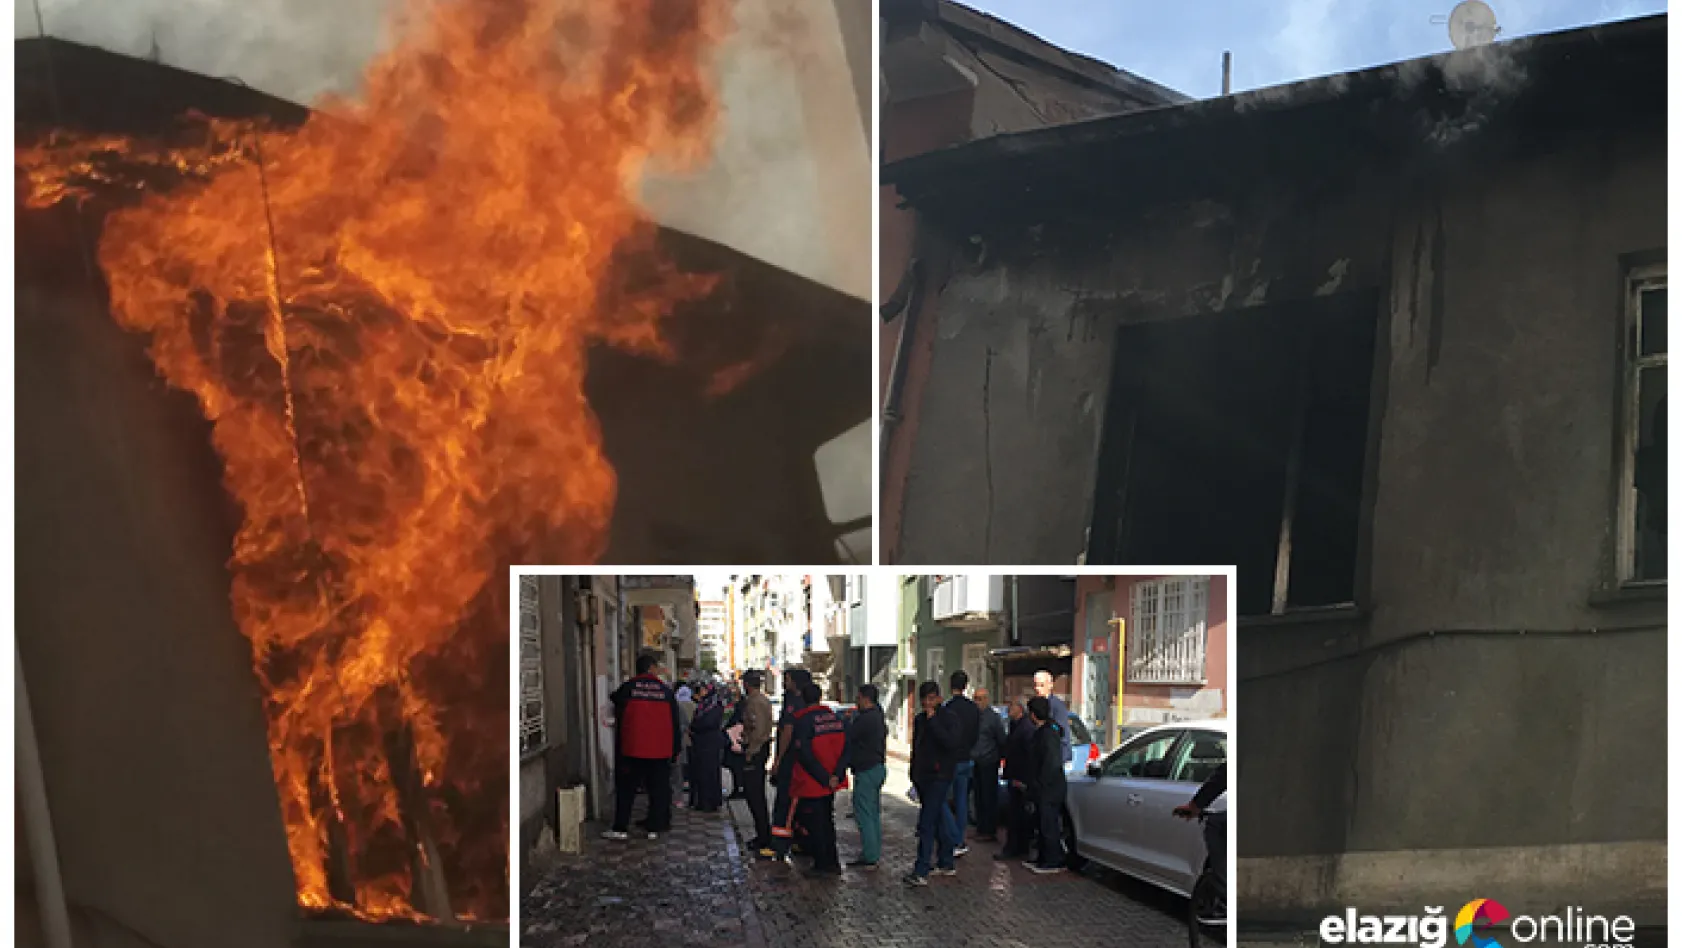 Elazığ'da öğrenci evi yangında kül oldu